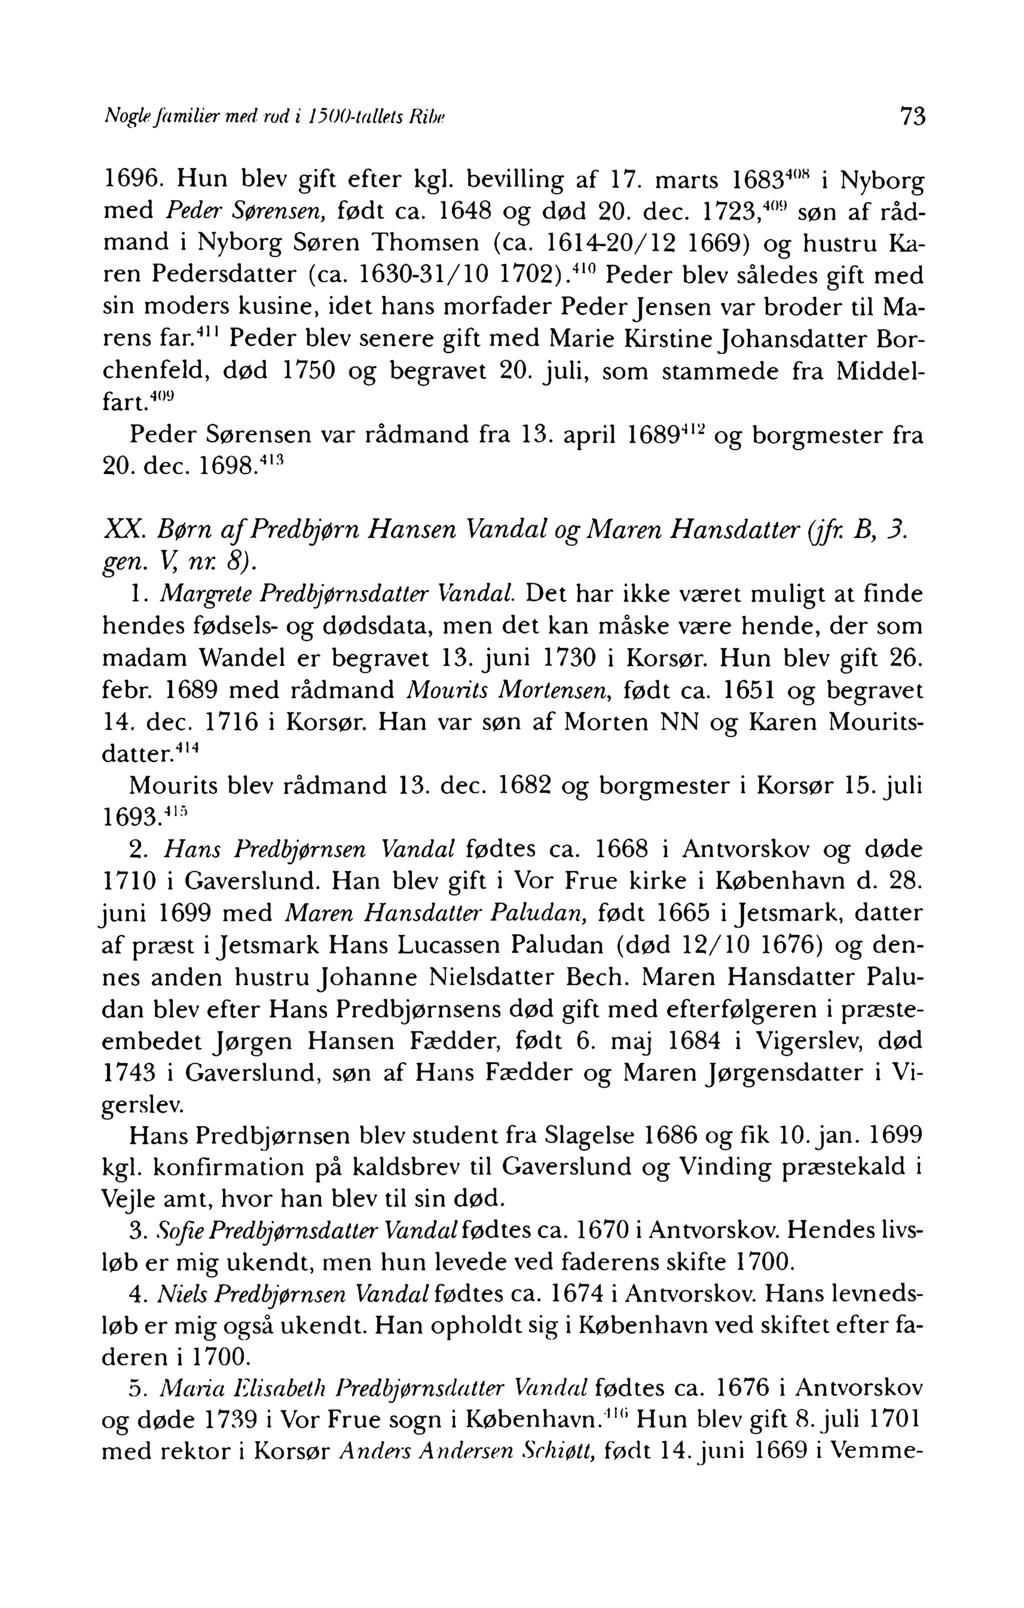 Samfundet for Dansk Genealogi og Personalhistorie - PDF Gratis download